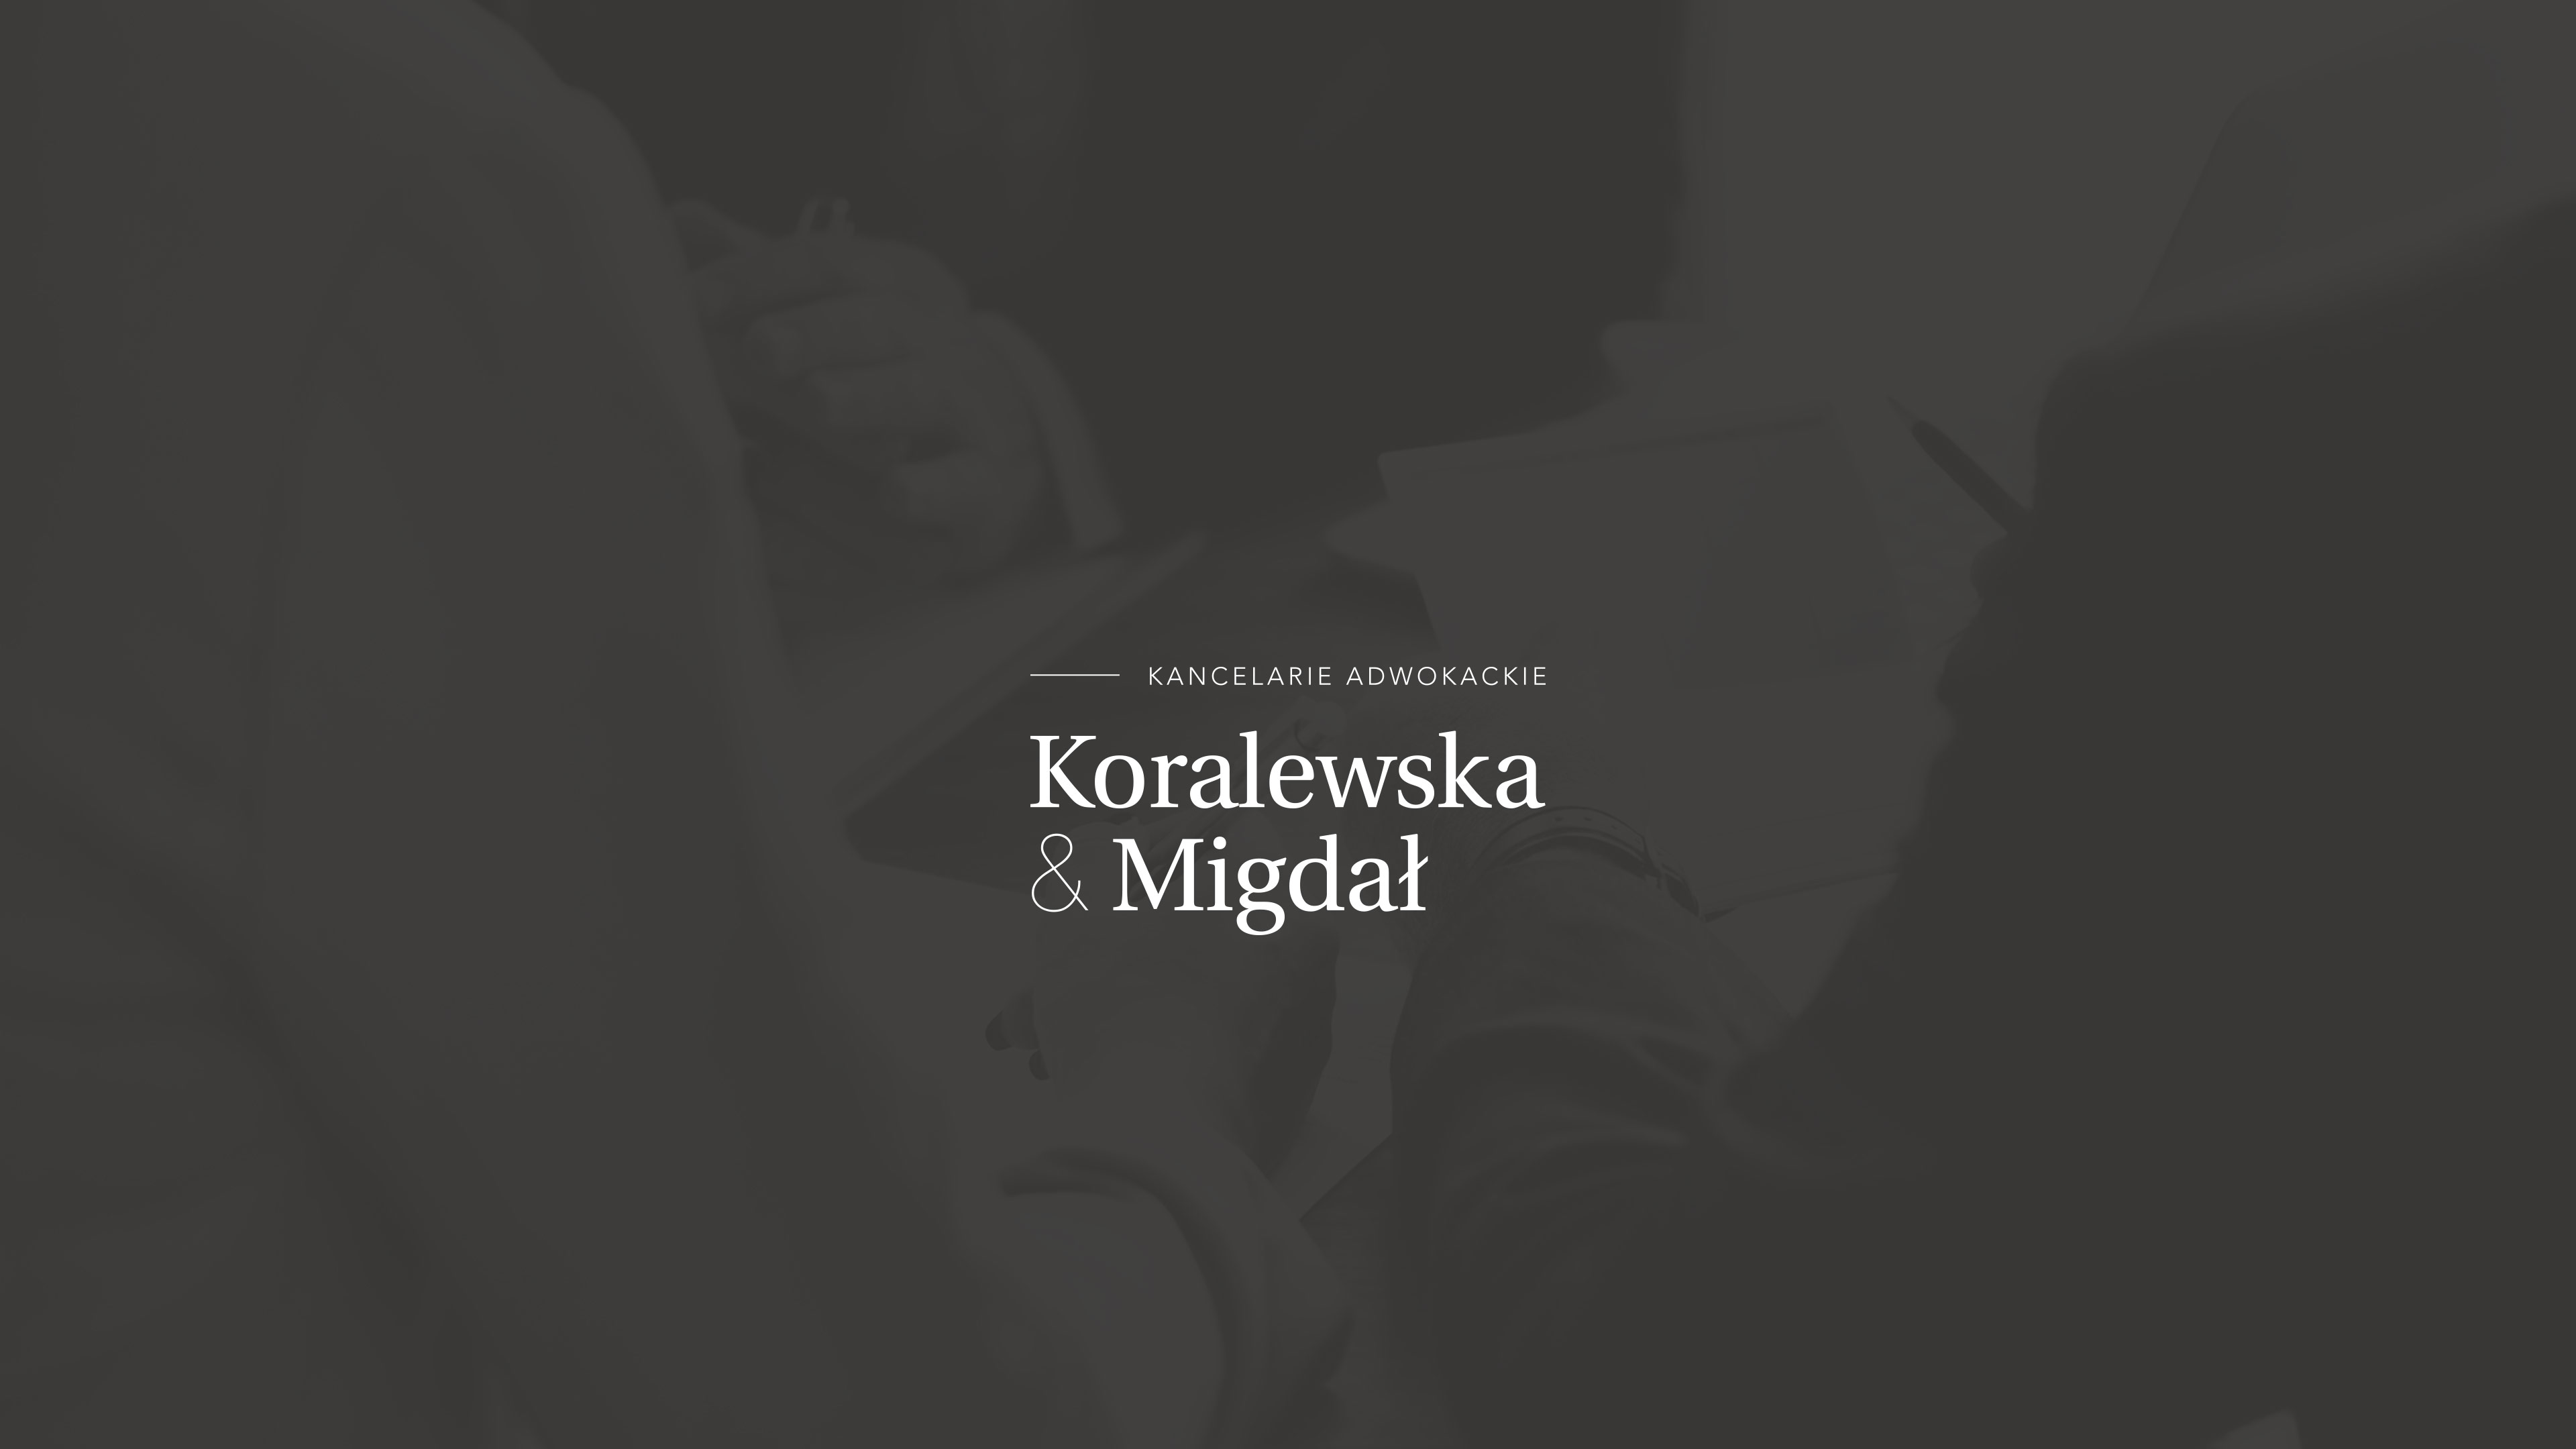 Koralewska & Migdał – logo na ciemnym tle